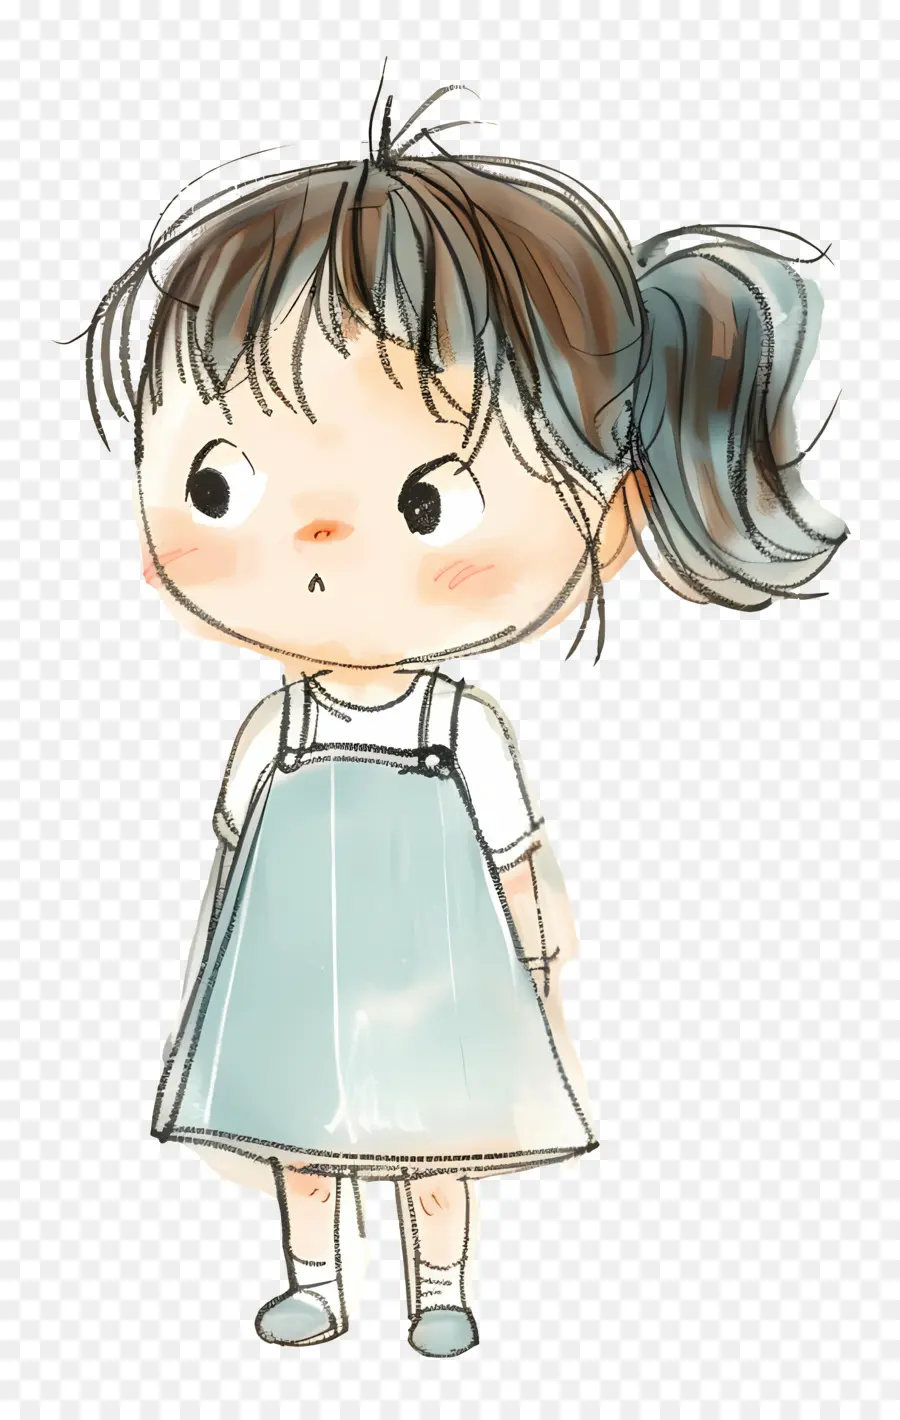 Bambino Student Cartoon GIGNO GIRL BLU ASSEGGIO BLACI - Giovane ragazza in abito blu con in mano oggetto